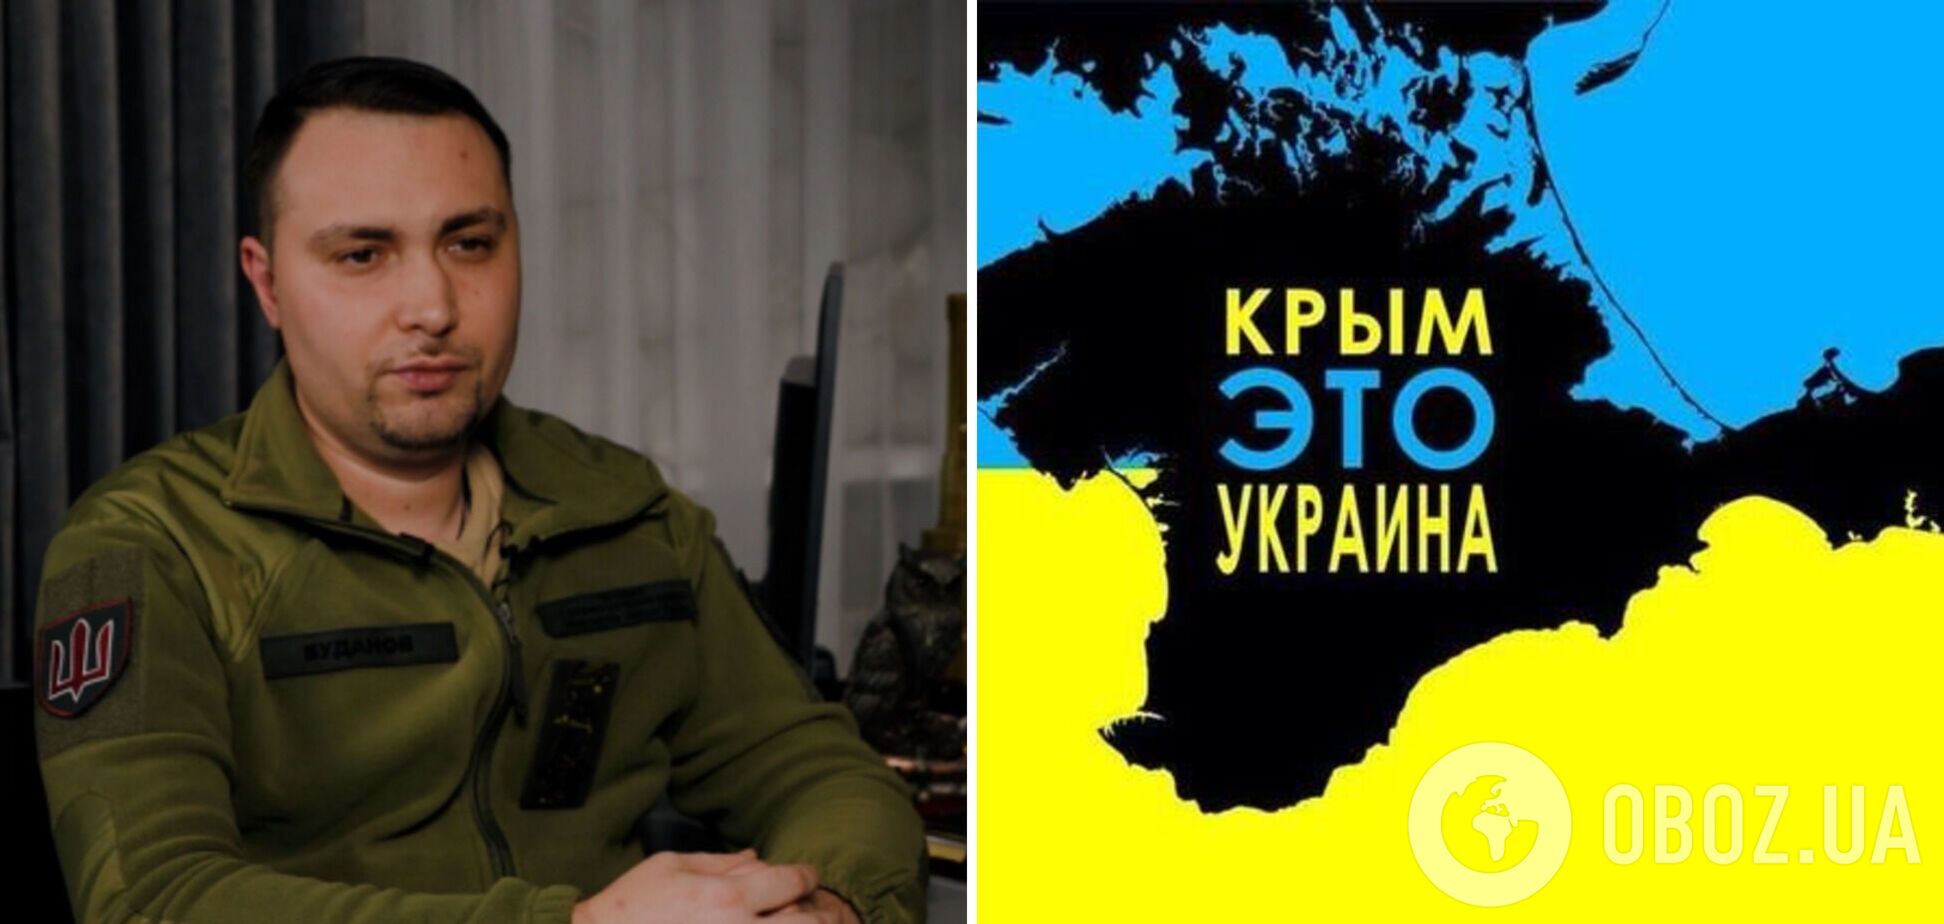 'Мы найдем каждого предателя': в оккупированном Крыму на радио прозвучало обращение Буданова о возвращении полуострова. Видео